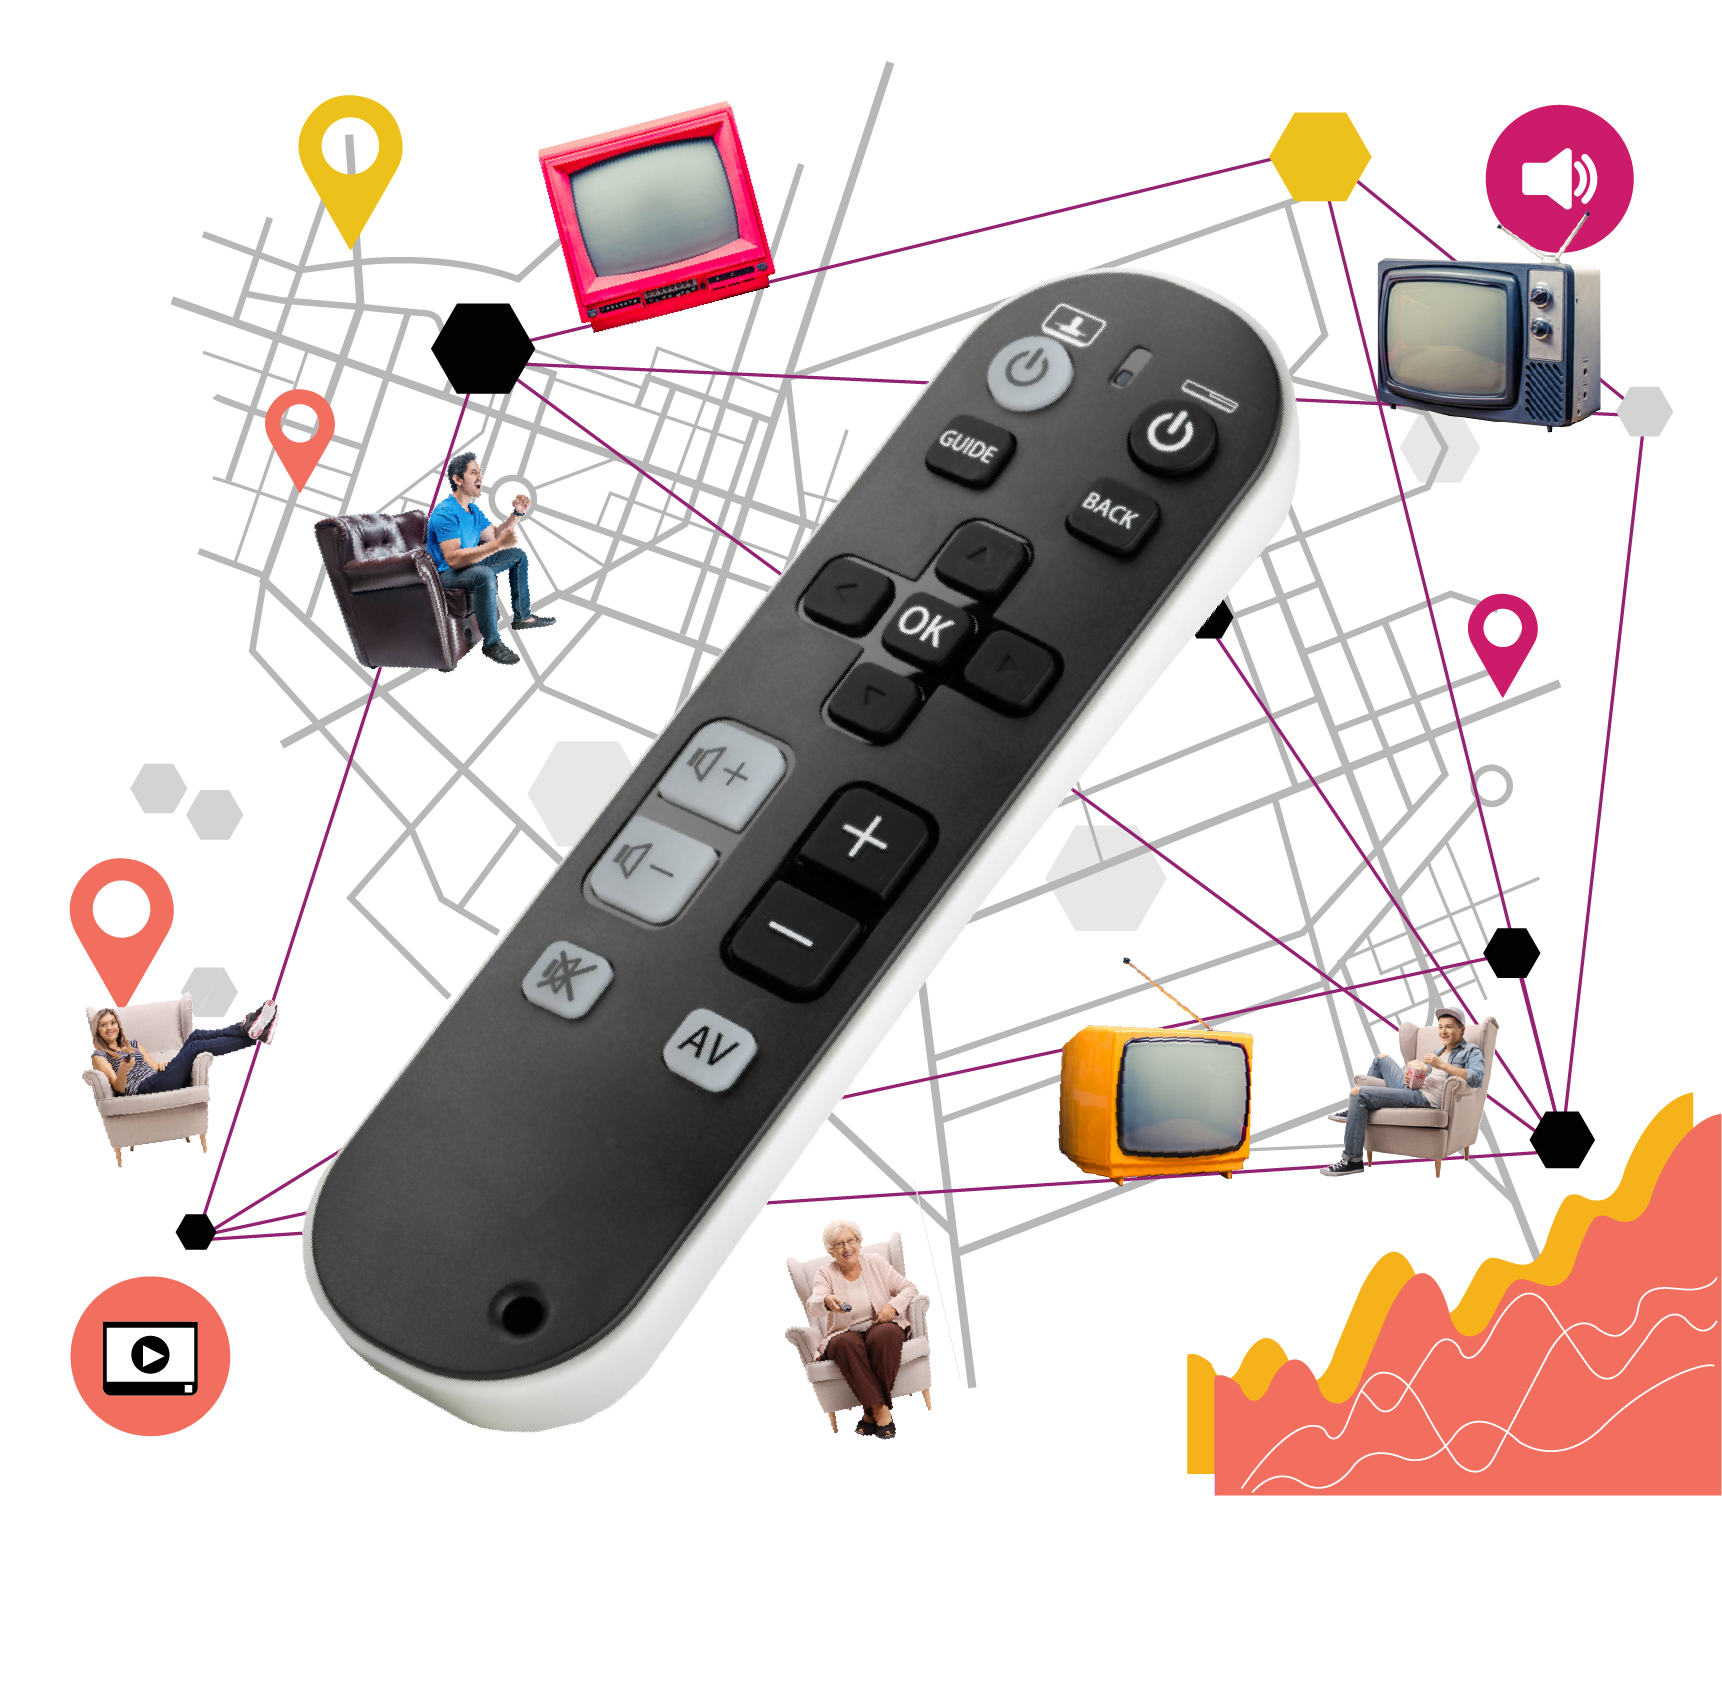 ADDtv imagen destacada, ilustración que representa un mando a distancia con persona a su alrededor disfrutando del la TV conectada